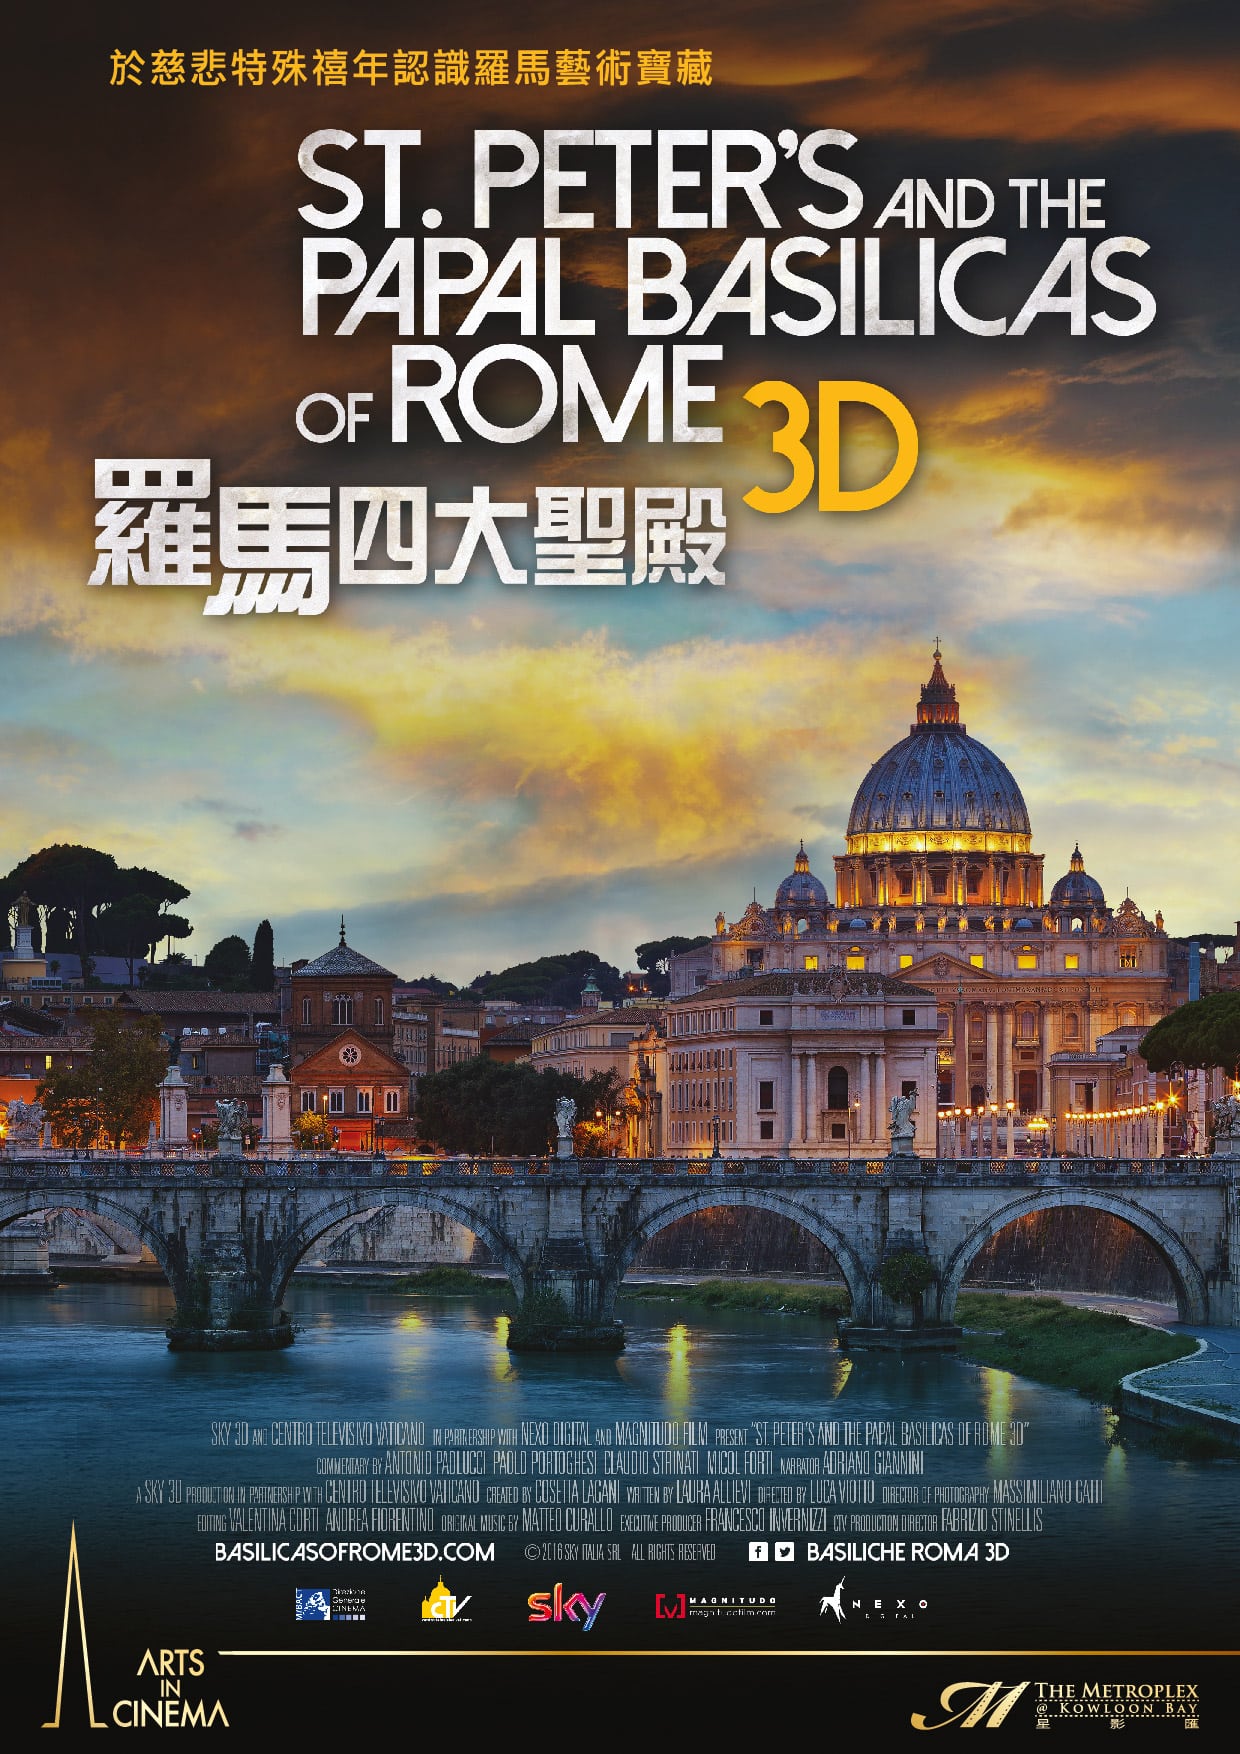 Basilicas-leaflet-ref-01